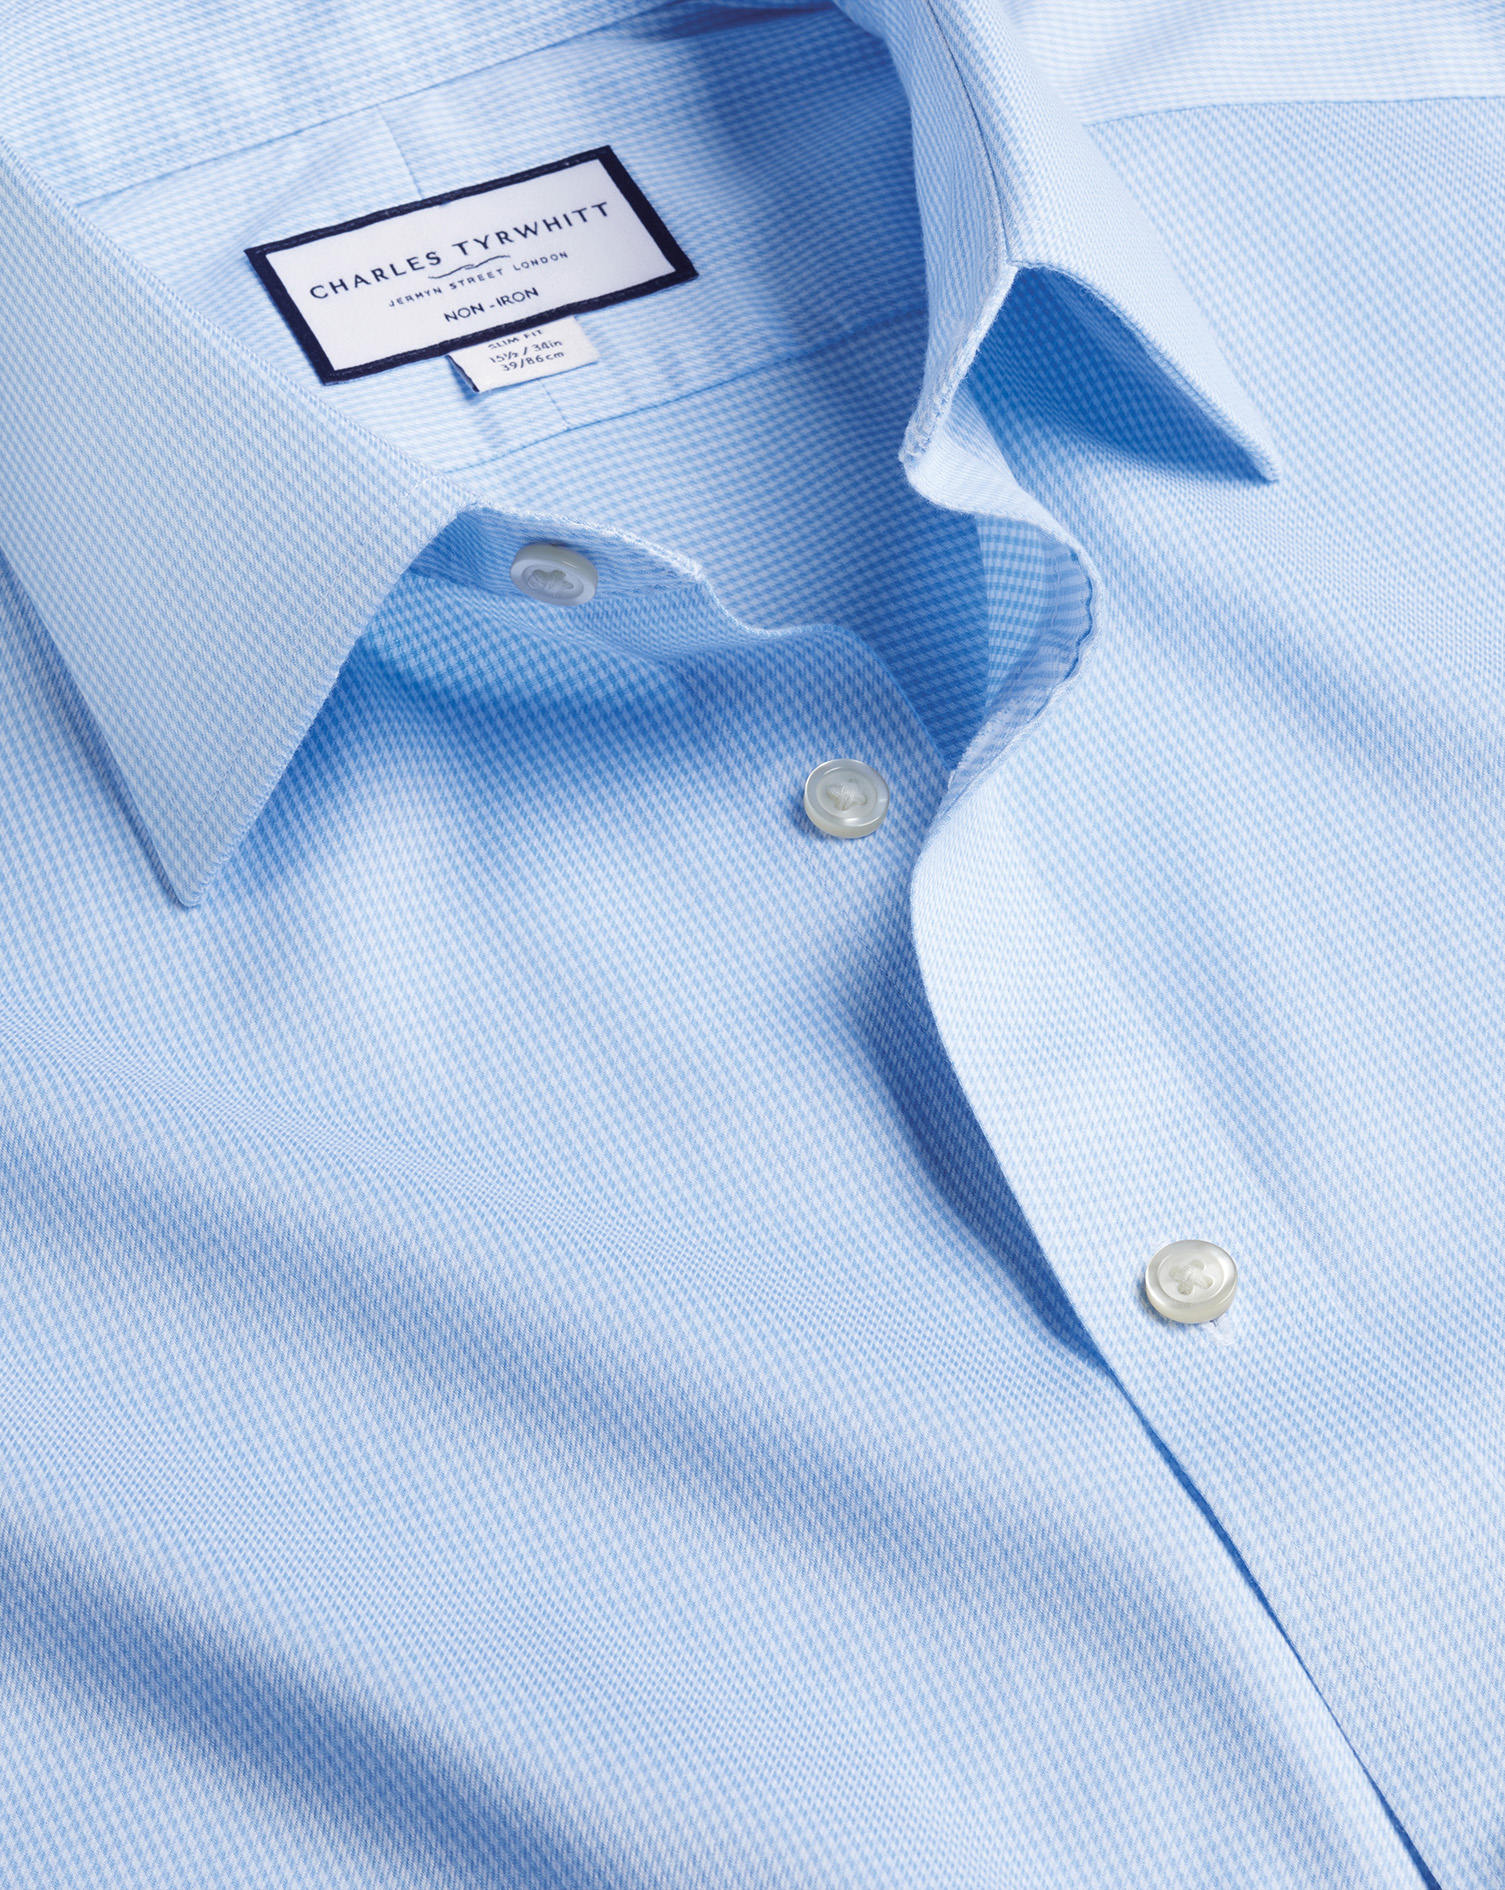 Men's Charles Tyrwhitt Non-Iron Puppytooth Dress Shirt - Sky Blue Single Cuff Size Medium Cotton
